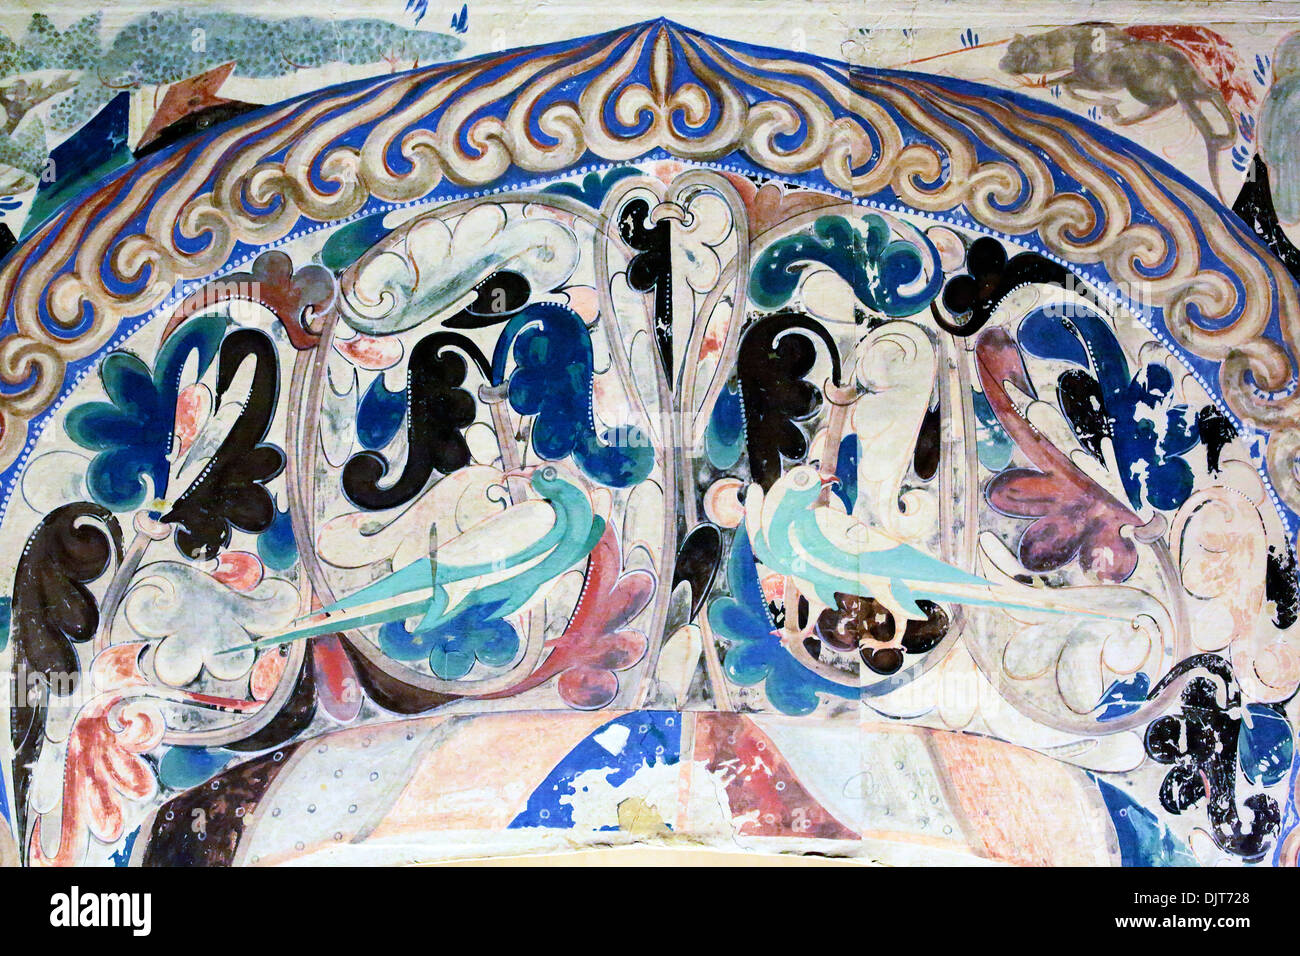 Peinture murale, Mogao Caves museum, Nanjing, province de Gansu, Chine Banque D'Images